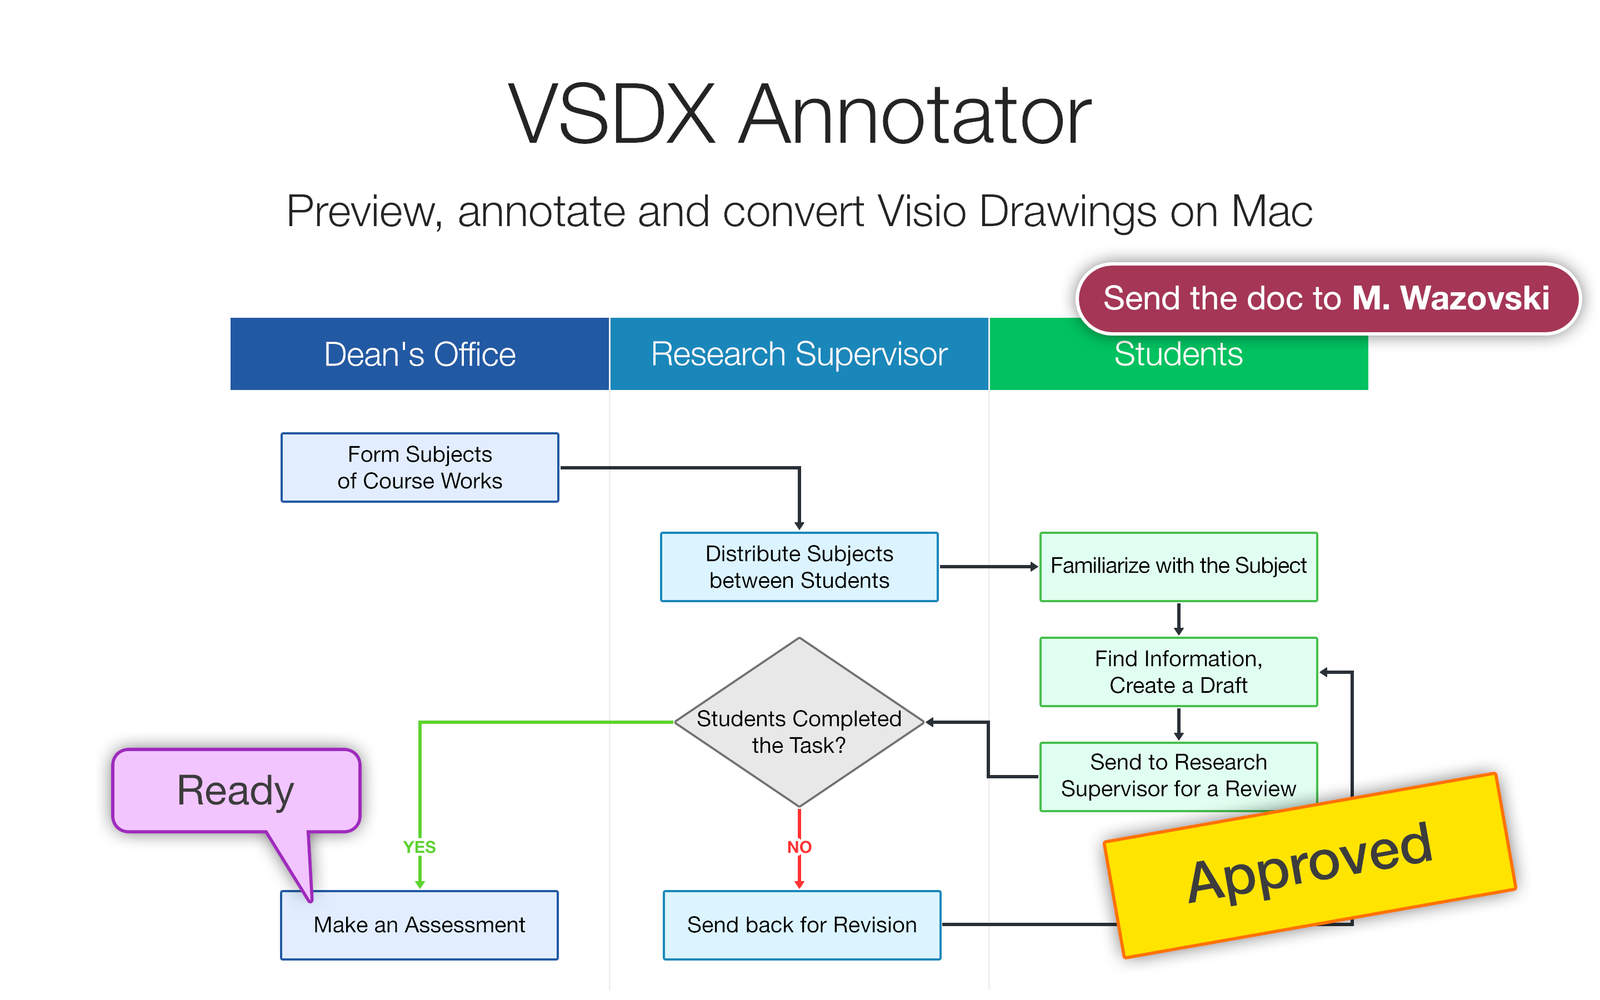 VSDX Annotator 1.1 : Main Window